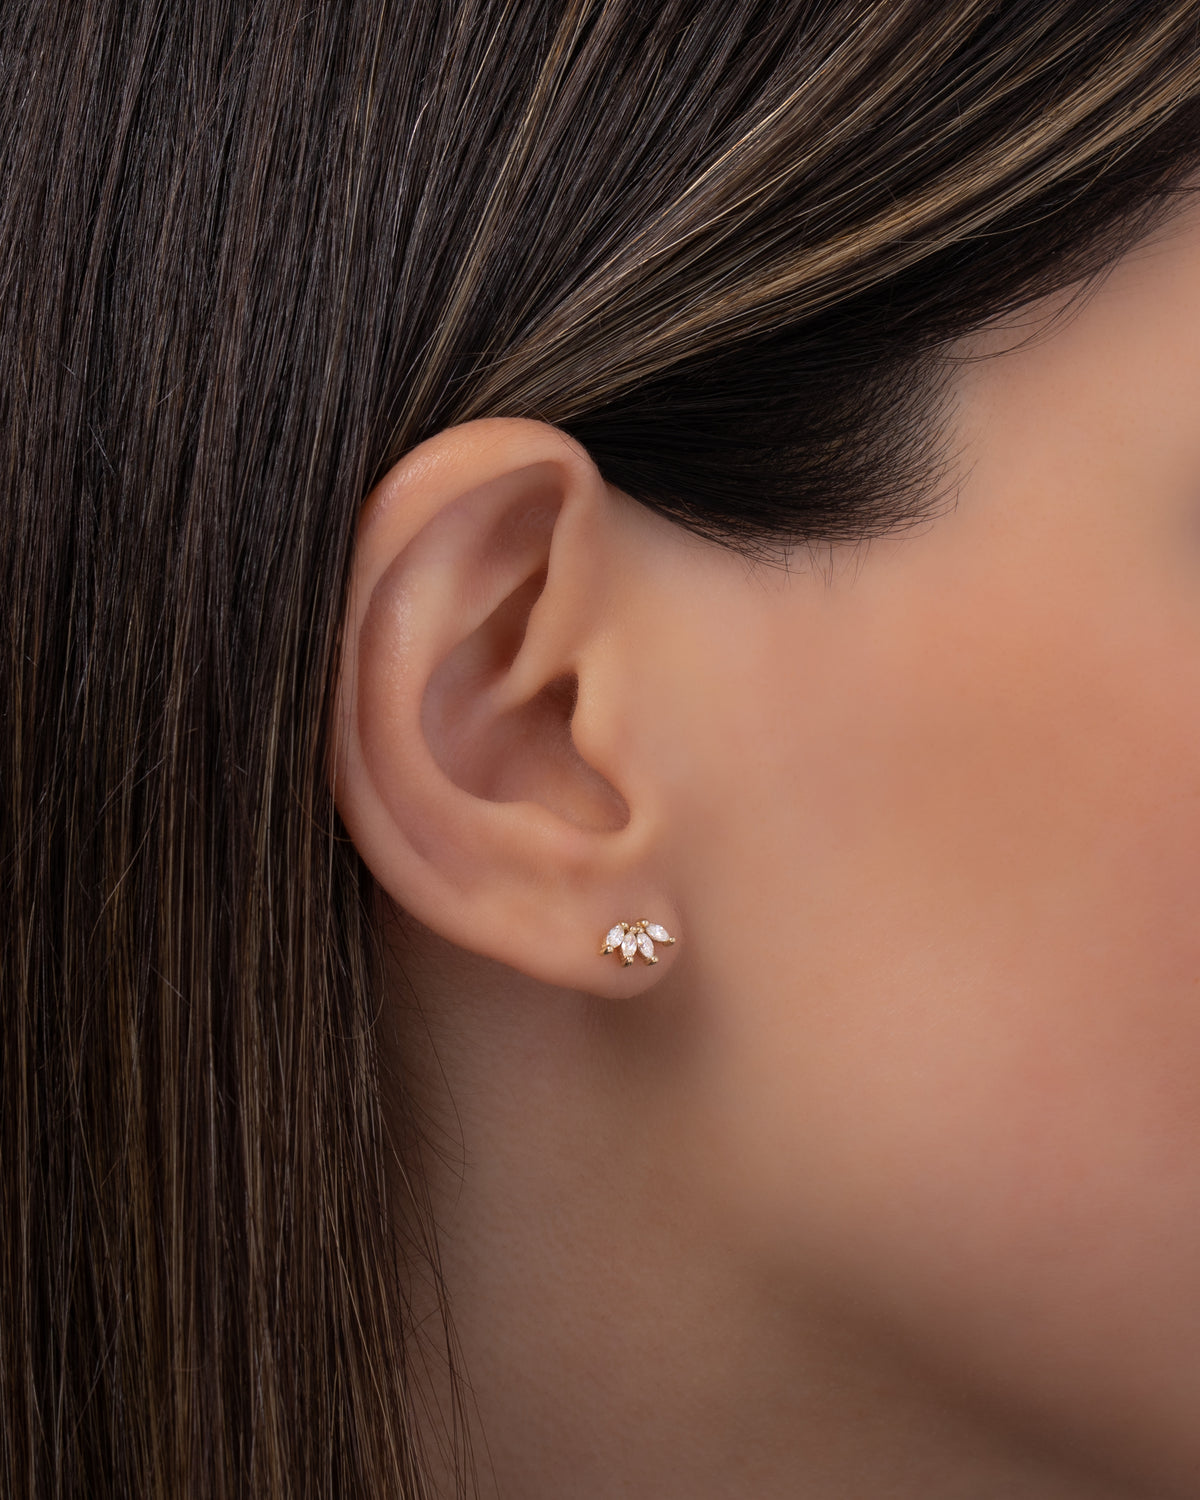 4 Marquise Diamond Stud Earrings